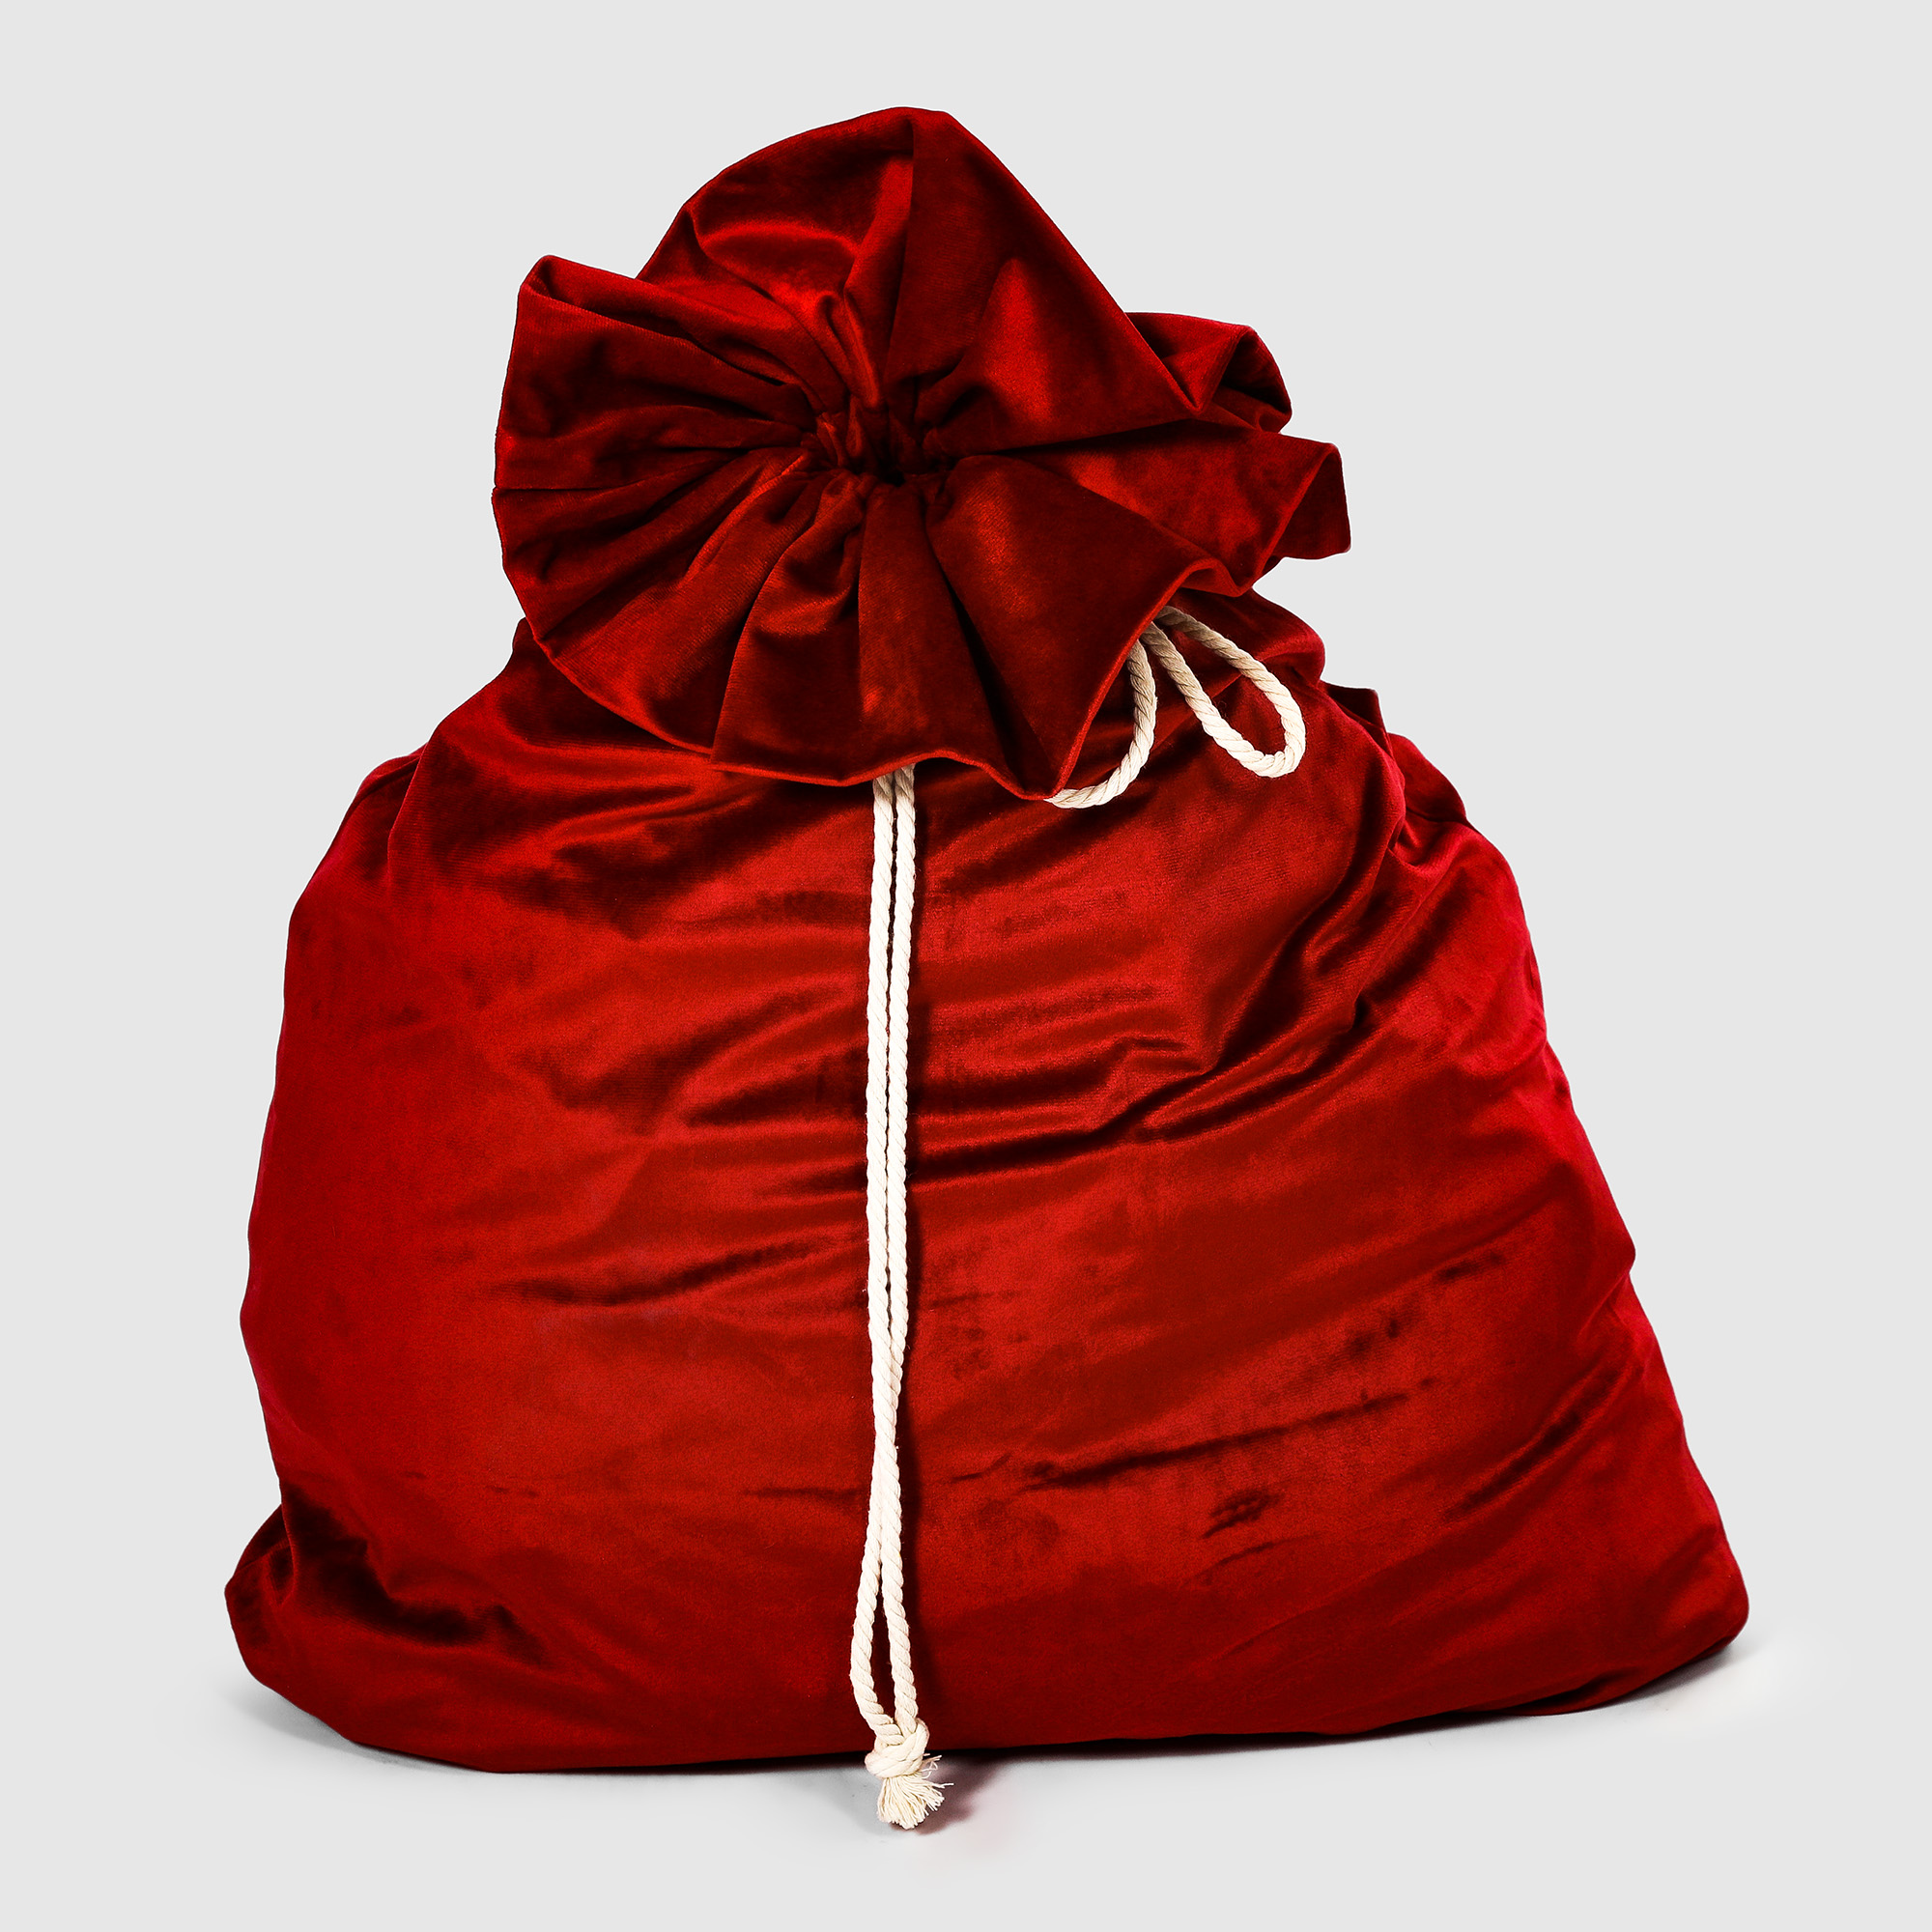 Мешок для подарков Bizzotto ny красный 60x100 см кресло мешок мяч бело красный